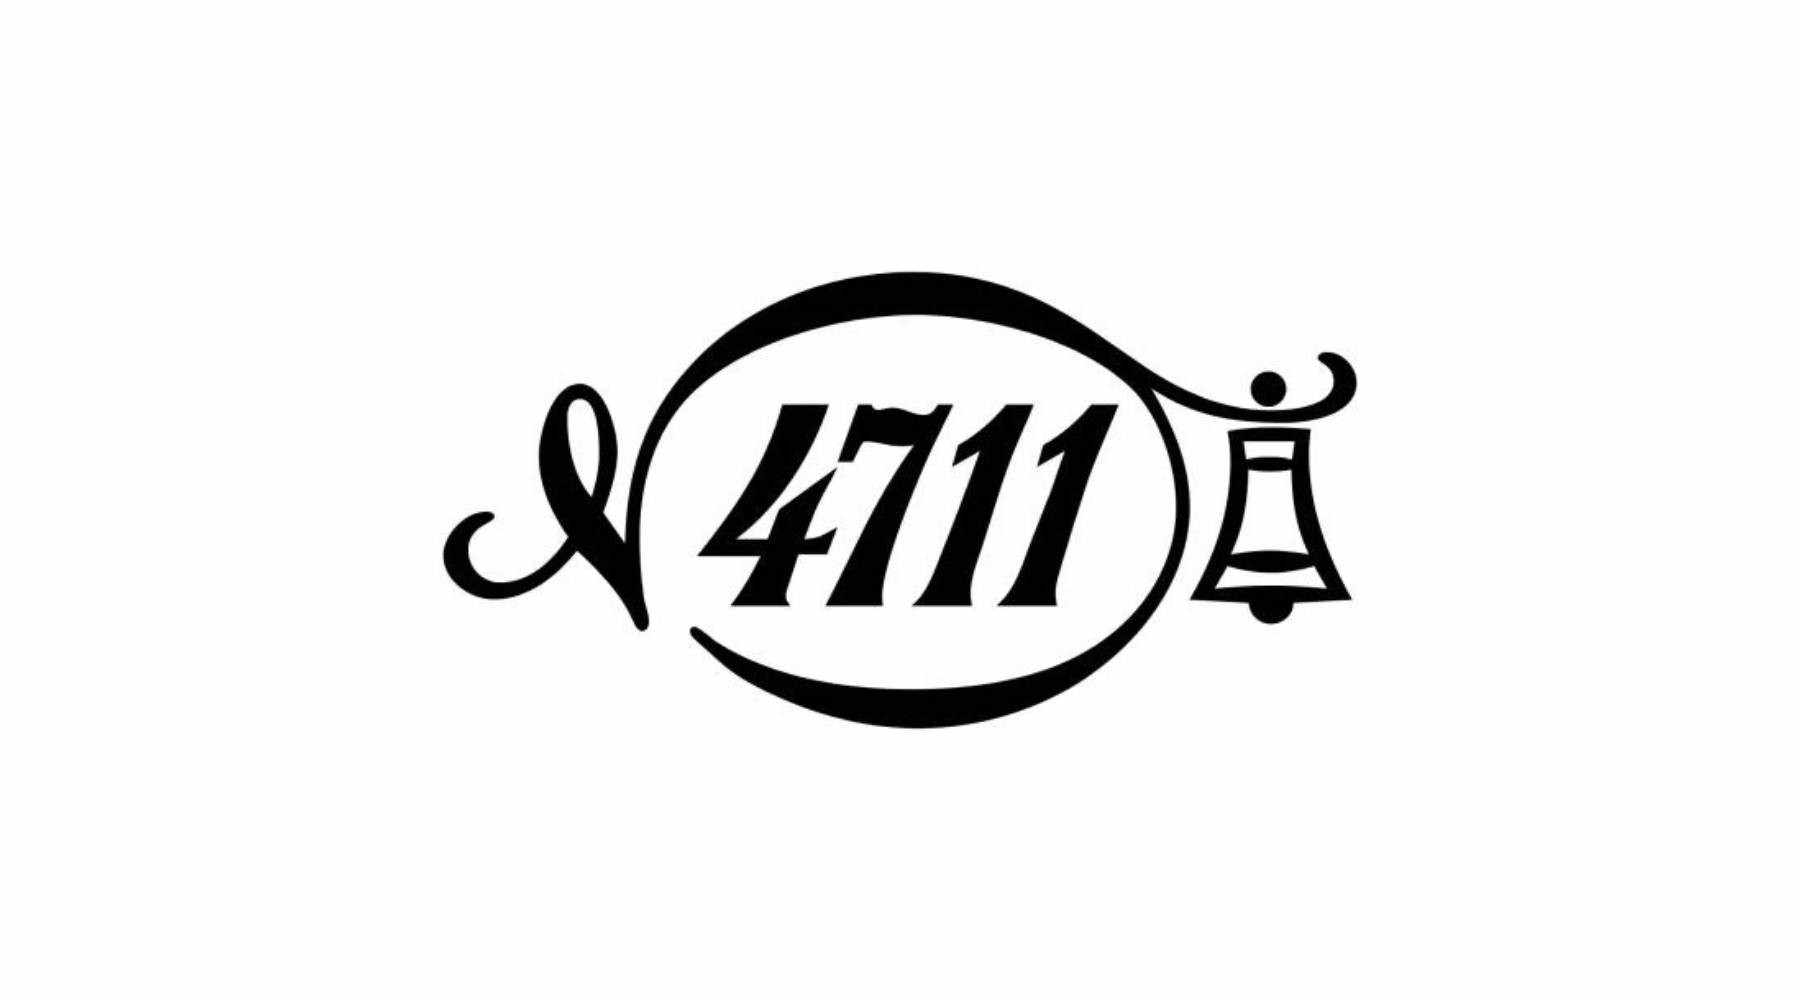 Logo of 4711